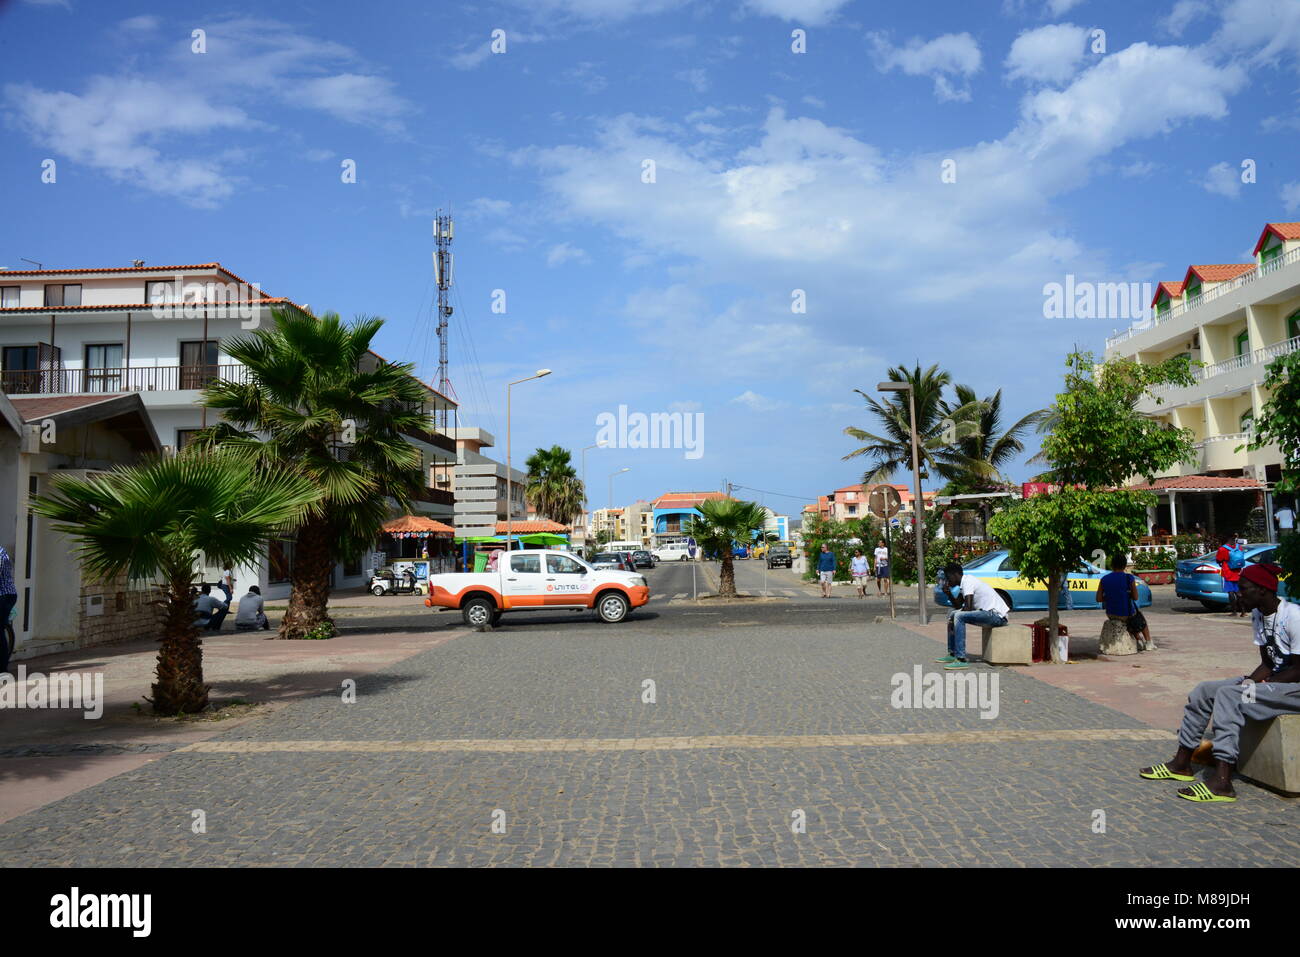 Street nel centro di Santa Maria città sulla isola di Sal, in Capo Verde (Africa). Capo Verde è un ex colonia portoghese nell'Oceano Atlantico. Foto Stock